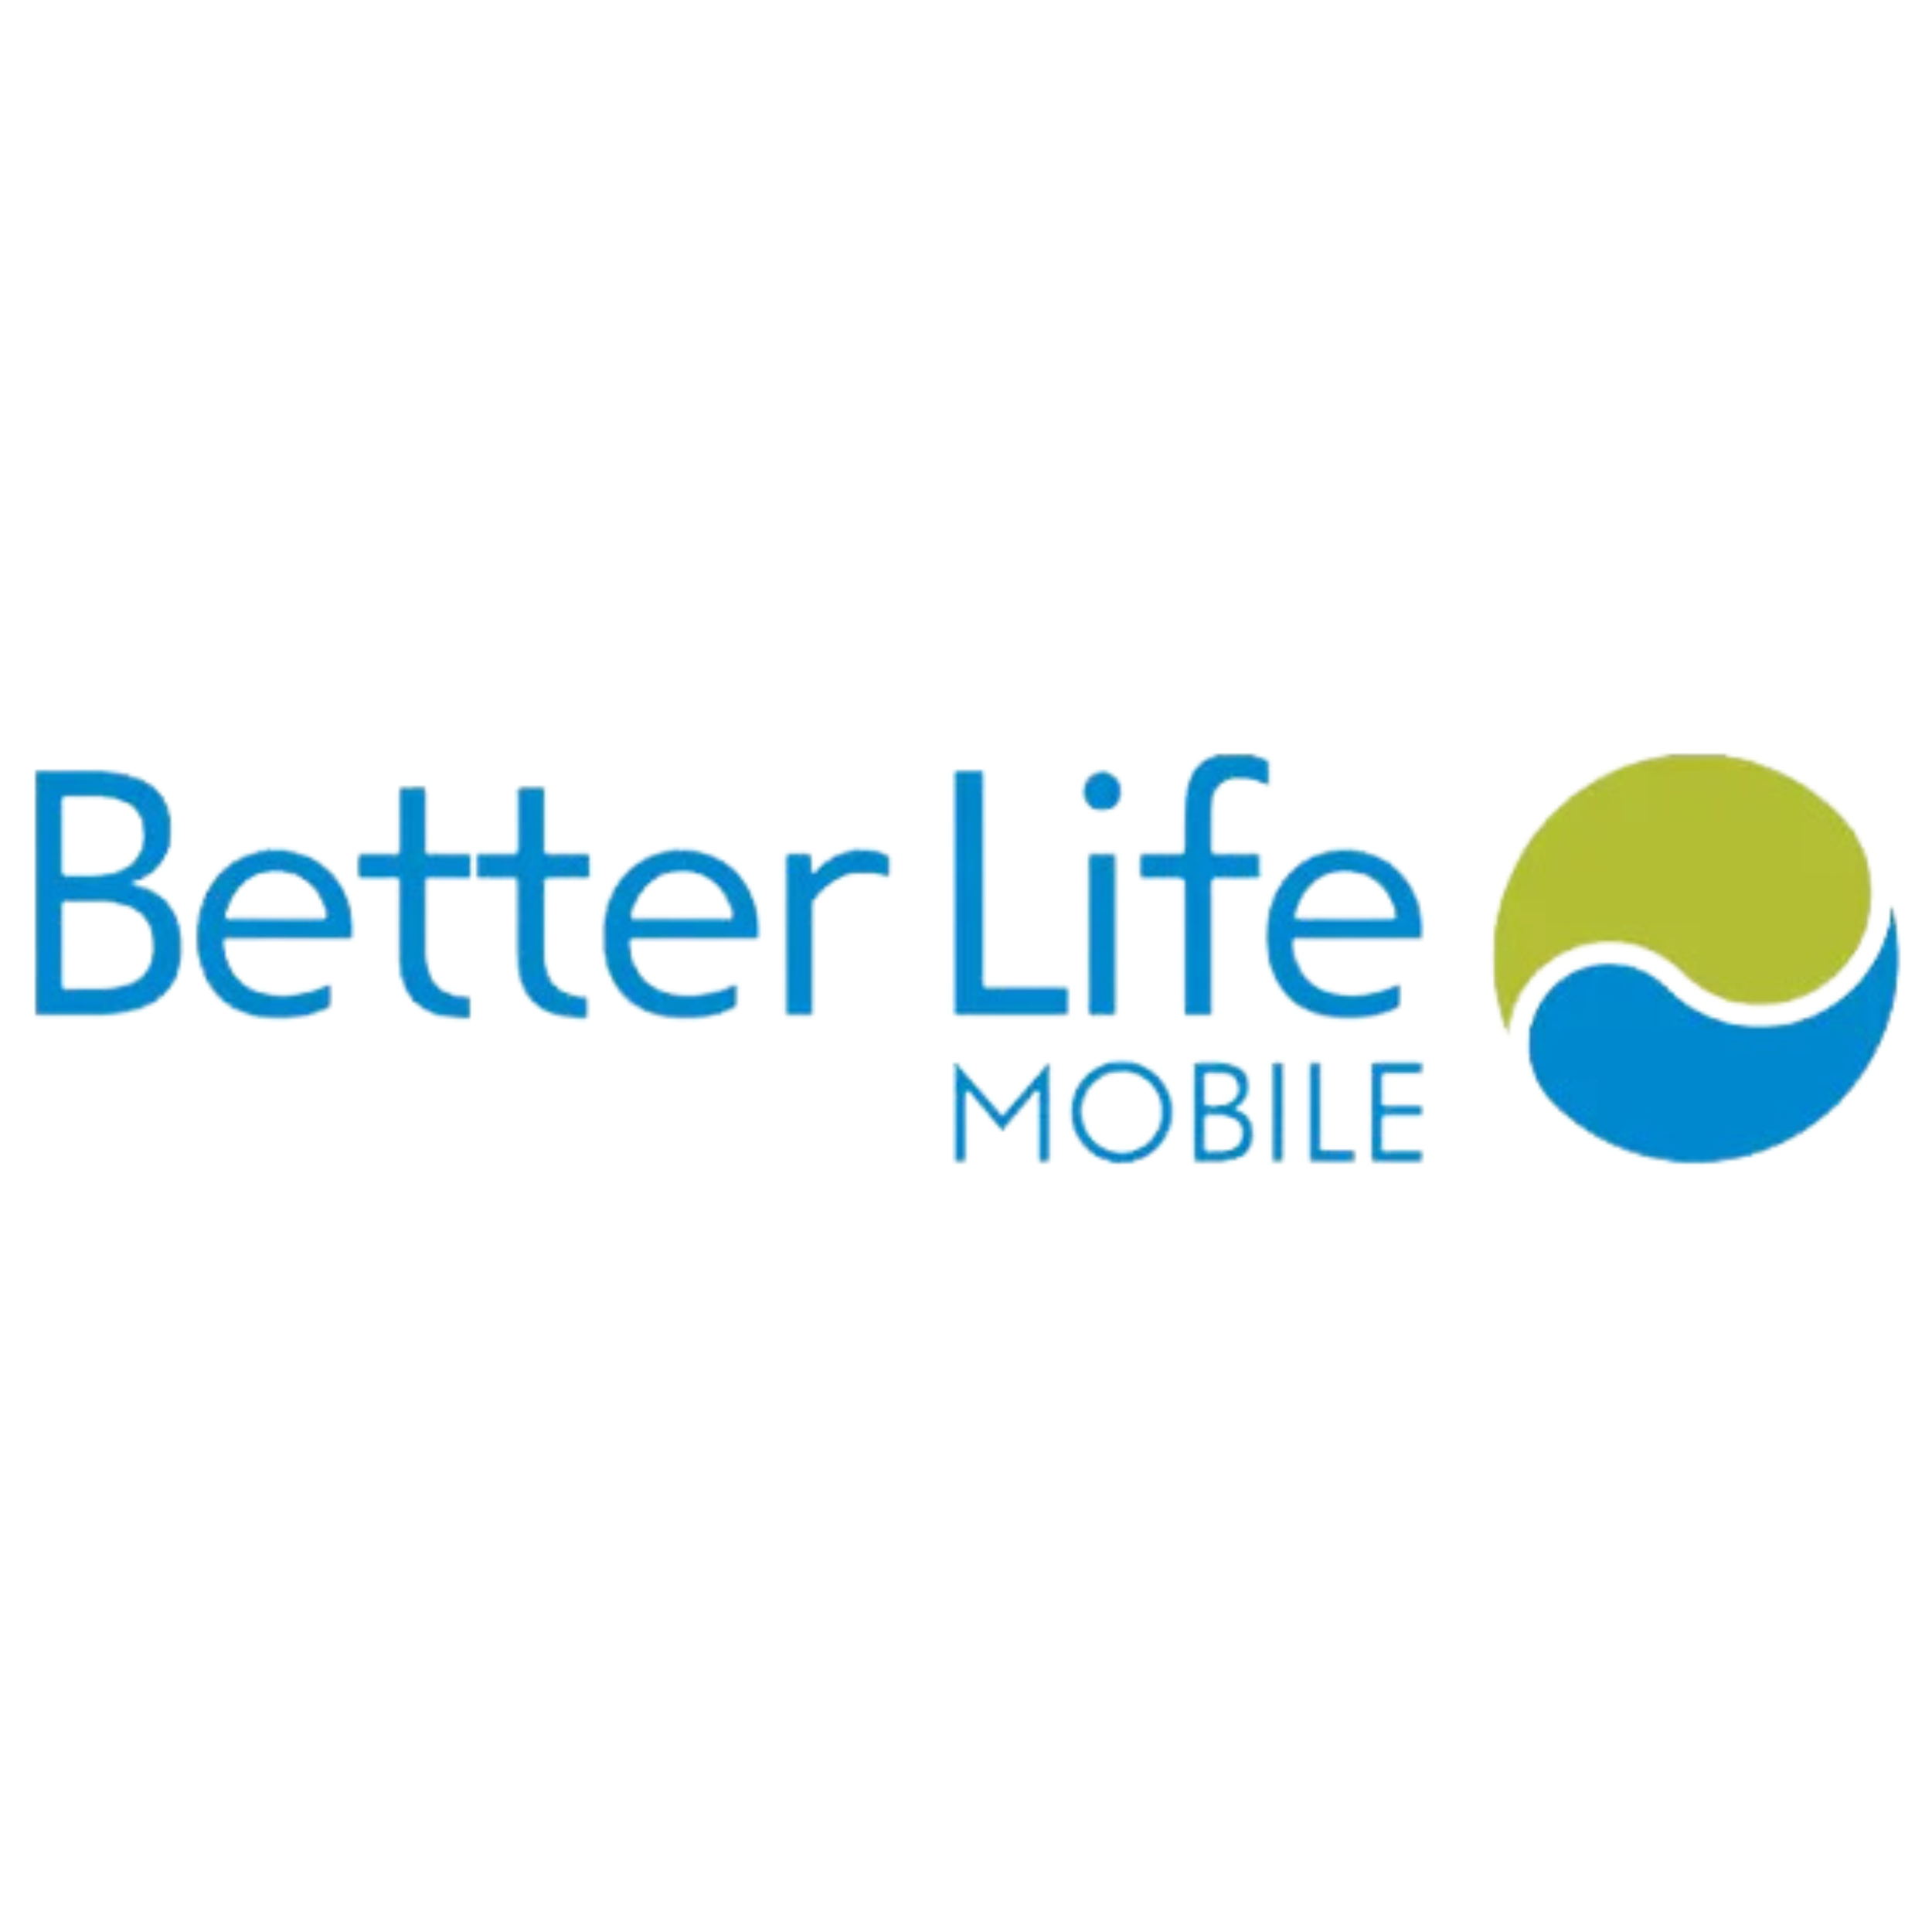 Better Life Mobile : Brand Short Description Type Here.